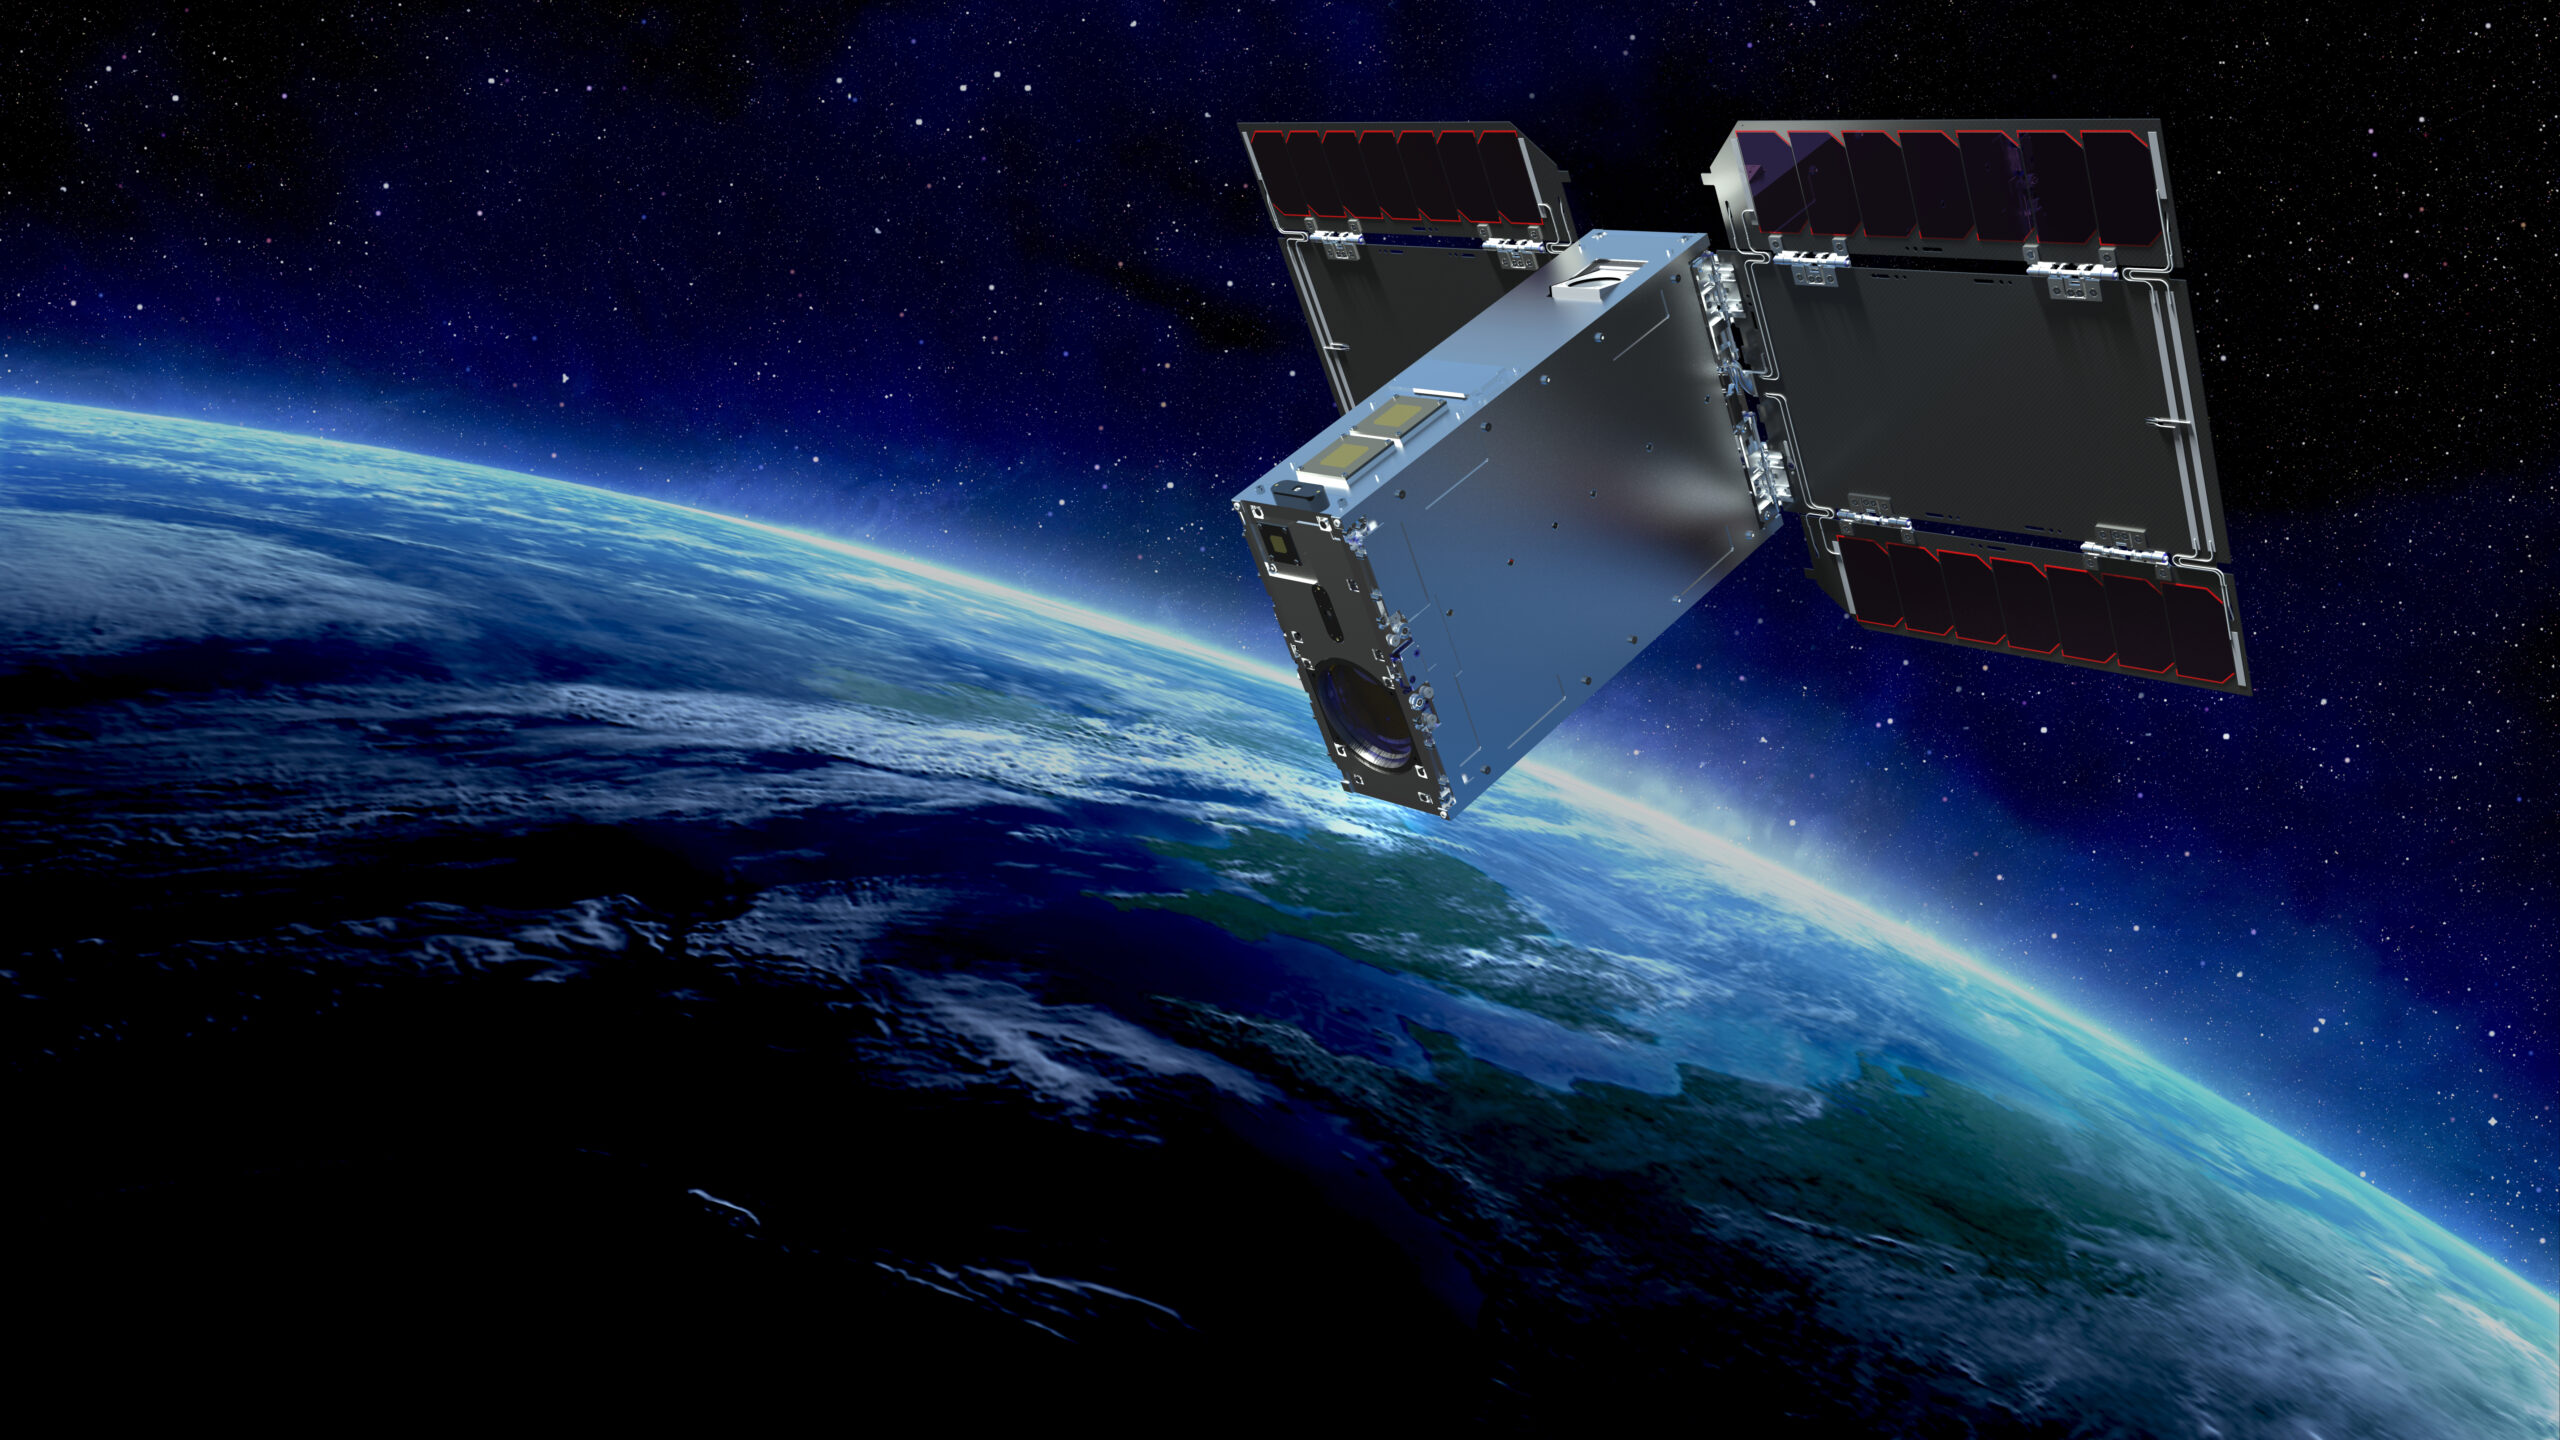 ソニーの超小型人工衛星「EYE」、Pale Blue開発の「水エンジン」の噴射に初めて成功